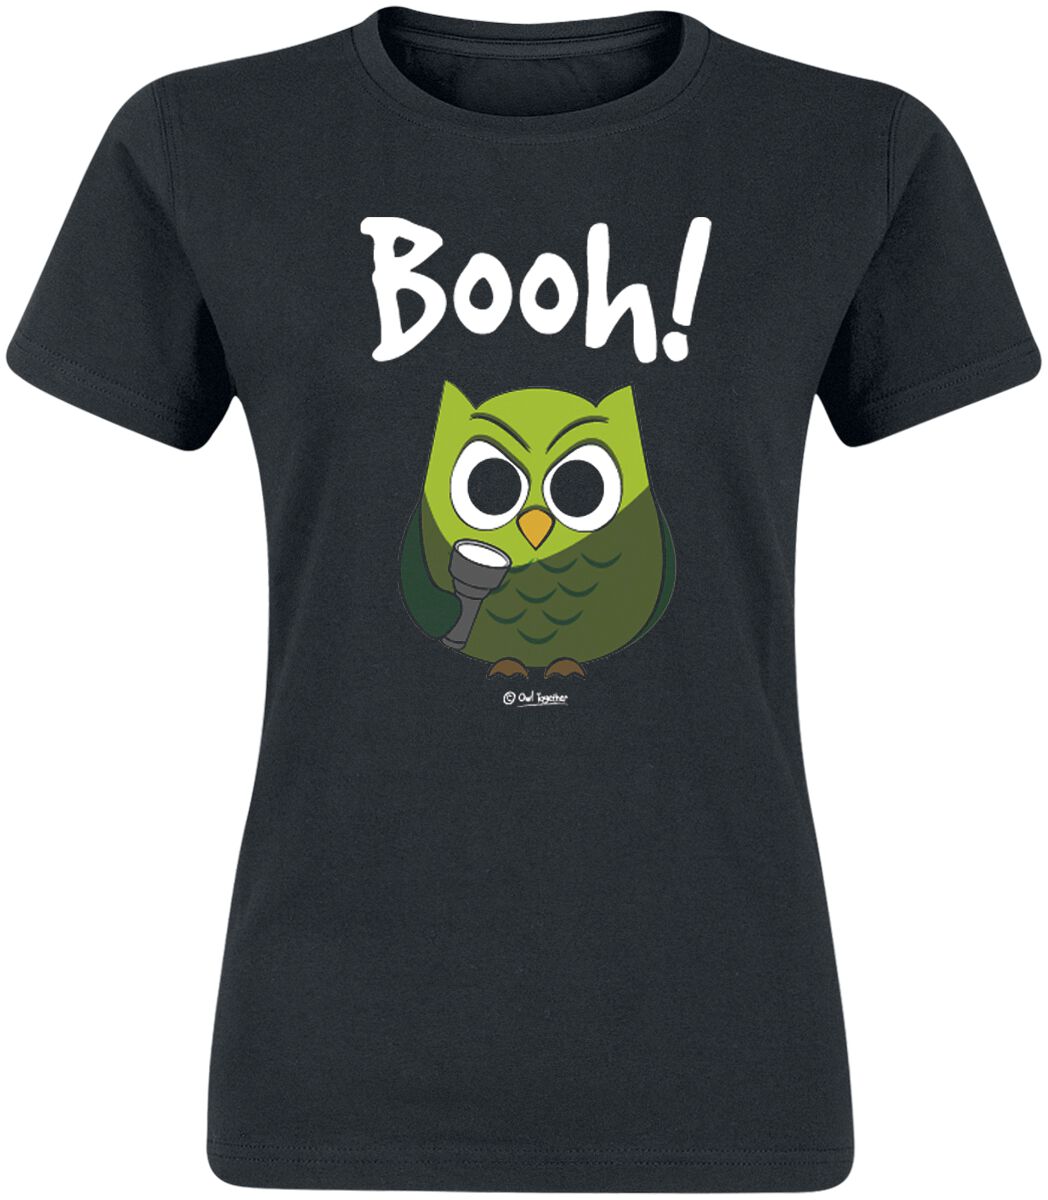 T-Shirt Manches courtes Fun de Tierisch - Booh! - S à 3XL - pour Femme - noir